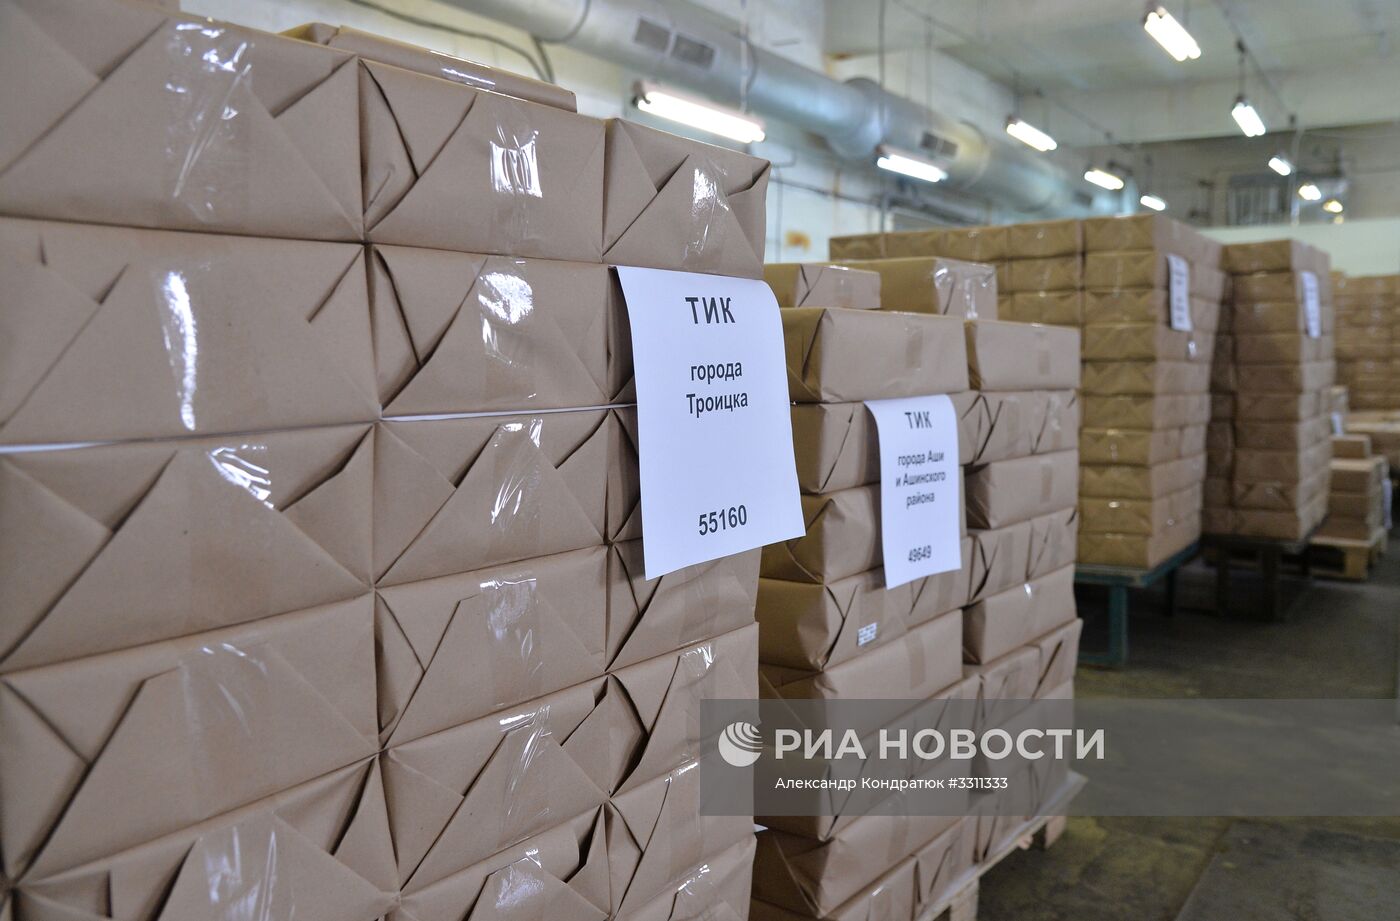 Передача бюллетеней для голосования на выборах президента РФ в Челябинской области